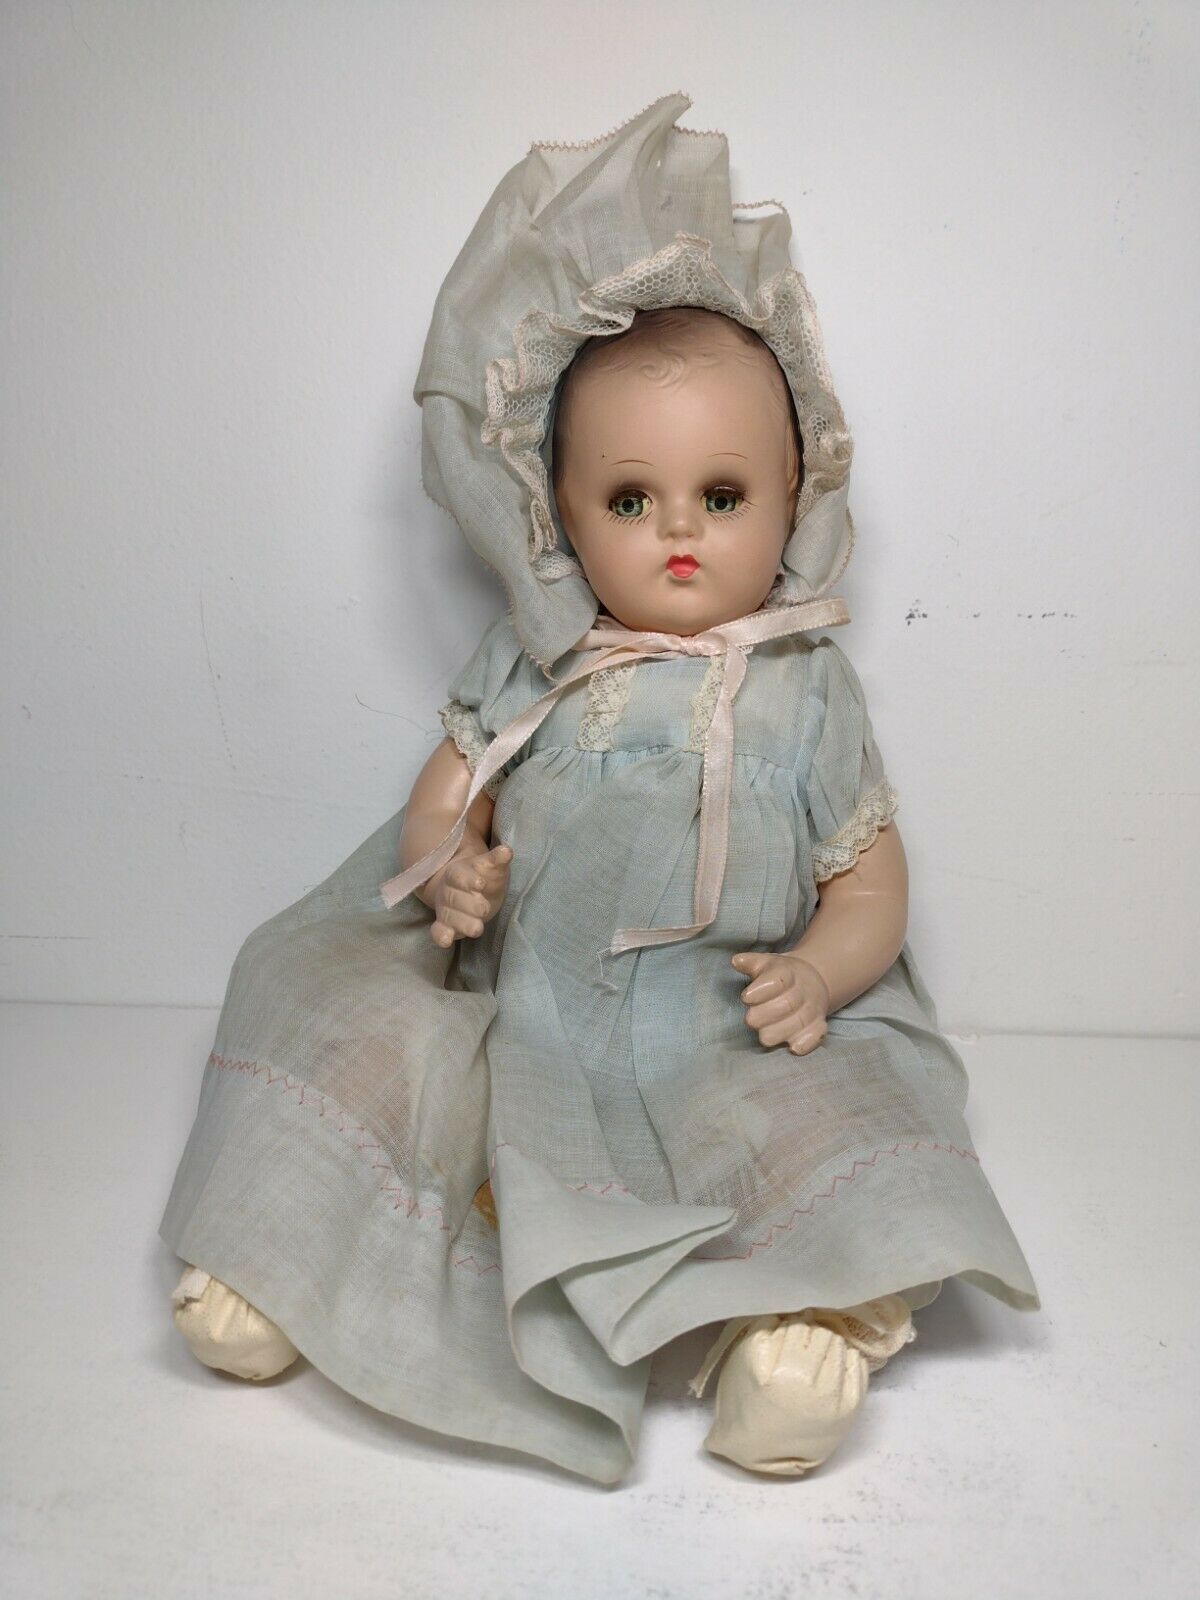 Genuine Horsman "art" Doll  Composition Cloth Body Crier Sleepy Eyes Baby W/tag